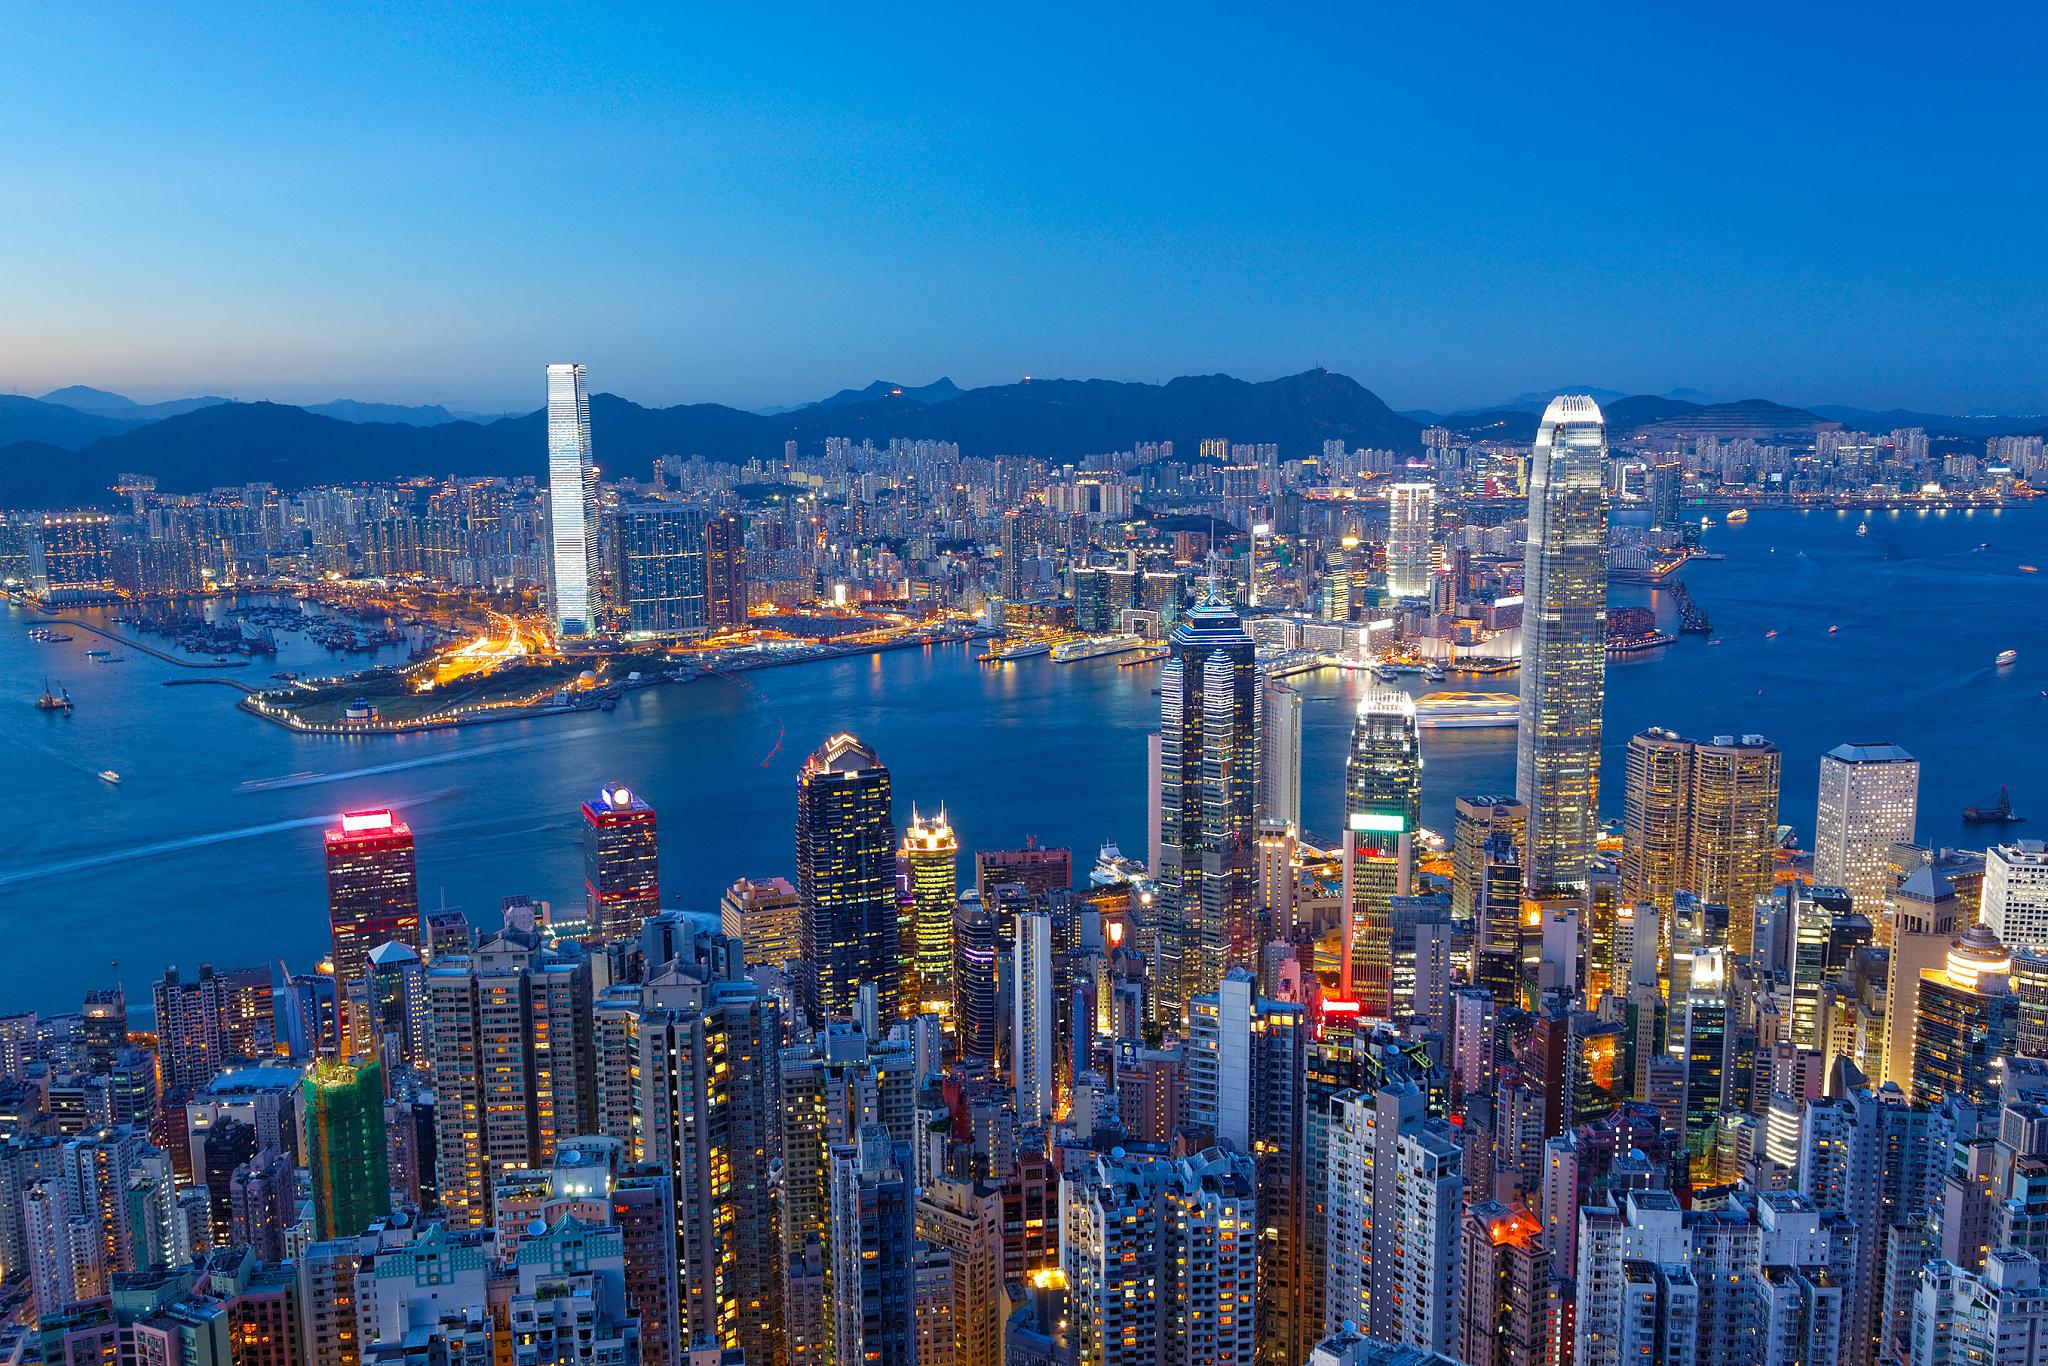 以下是香港旅游必去的十大景点以及它们的地点和风景描述